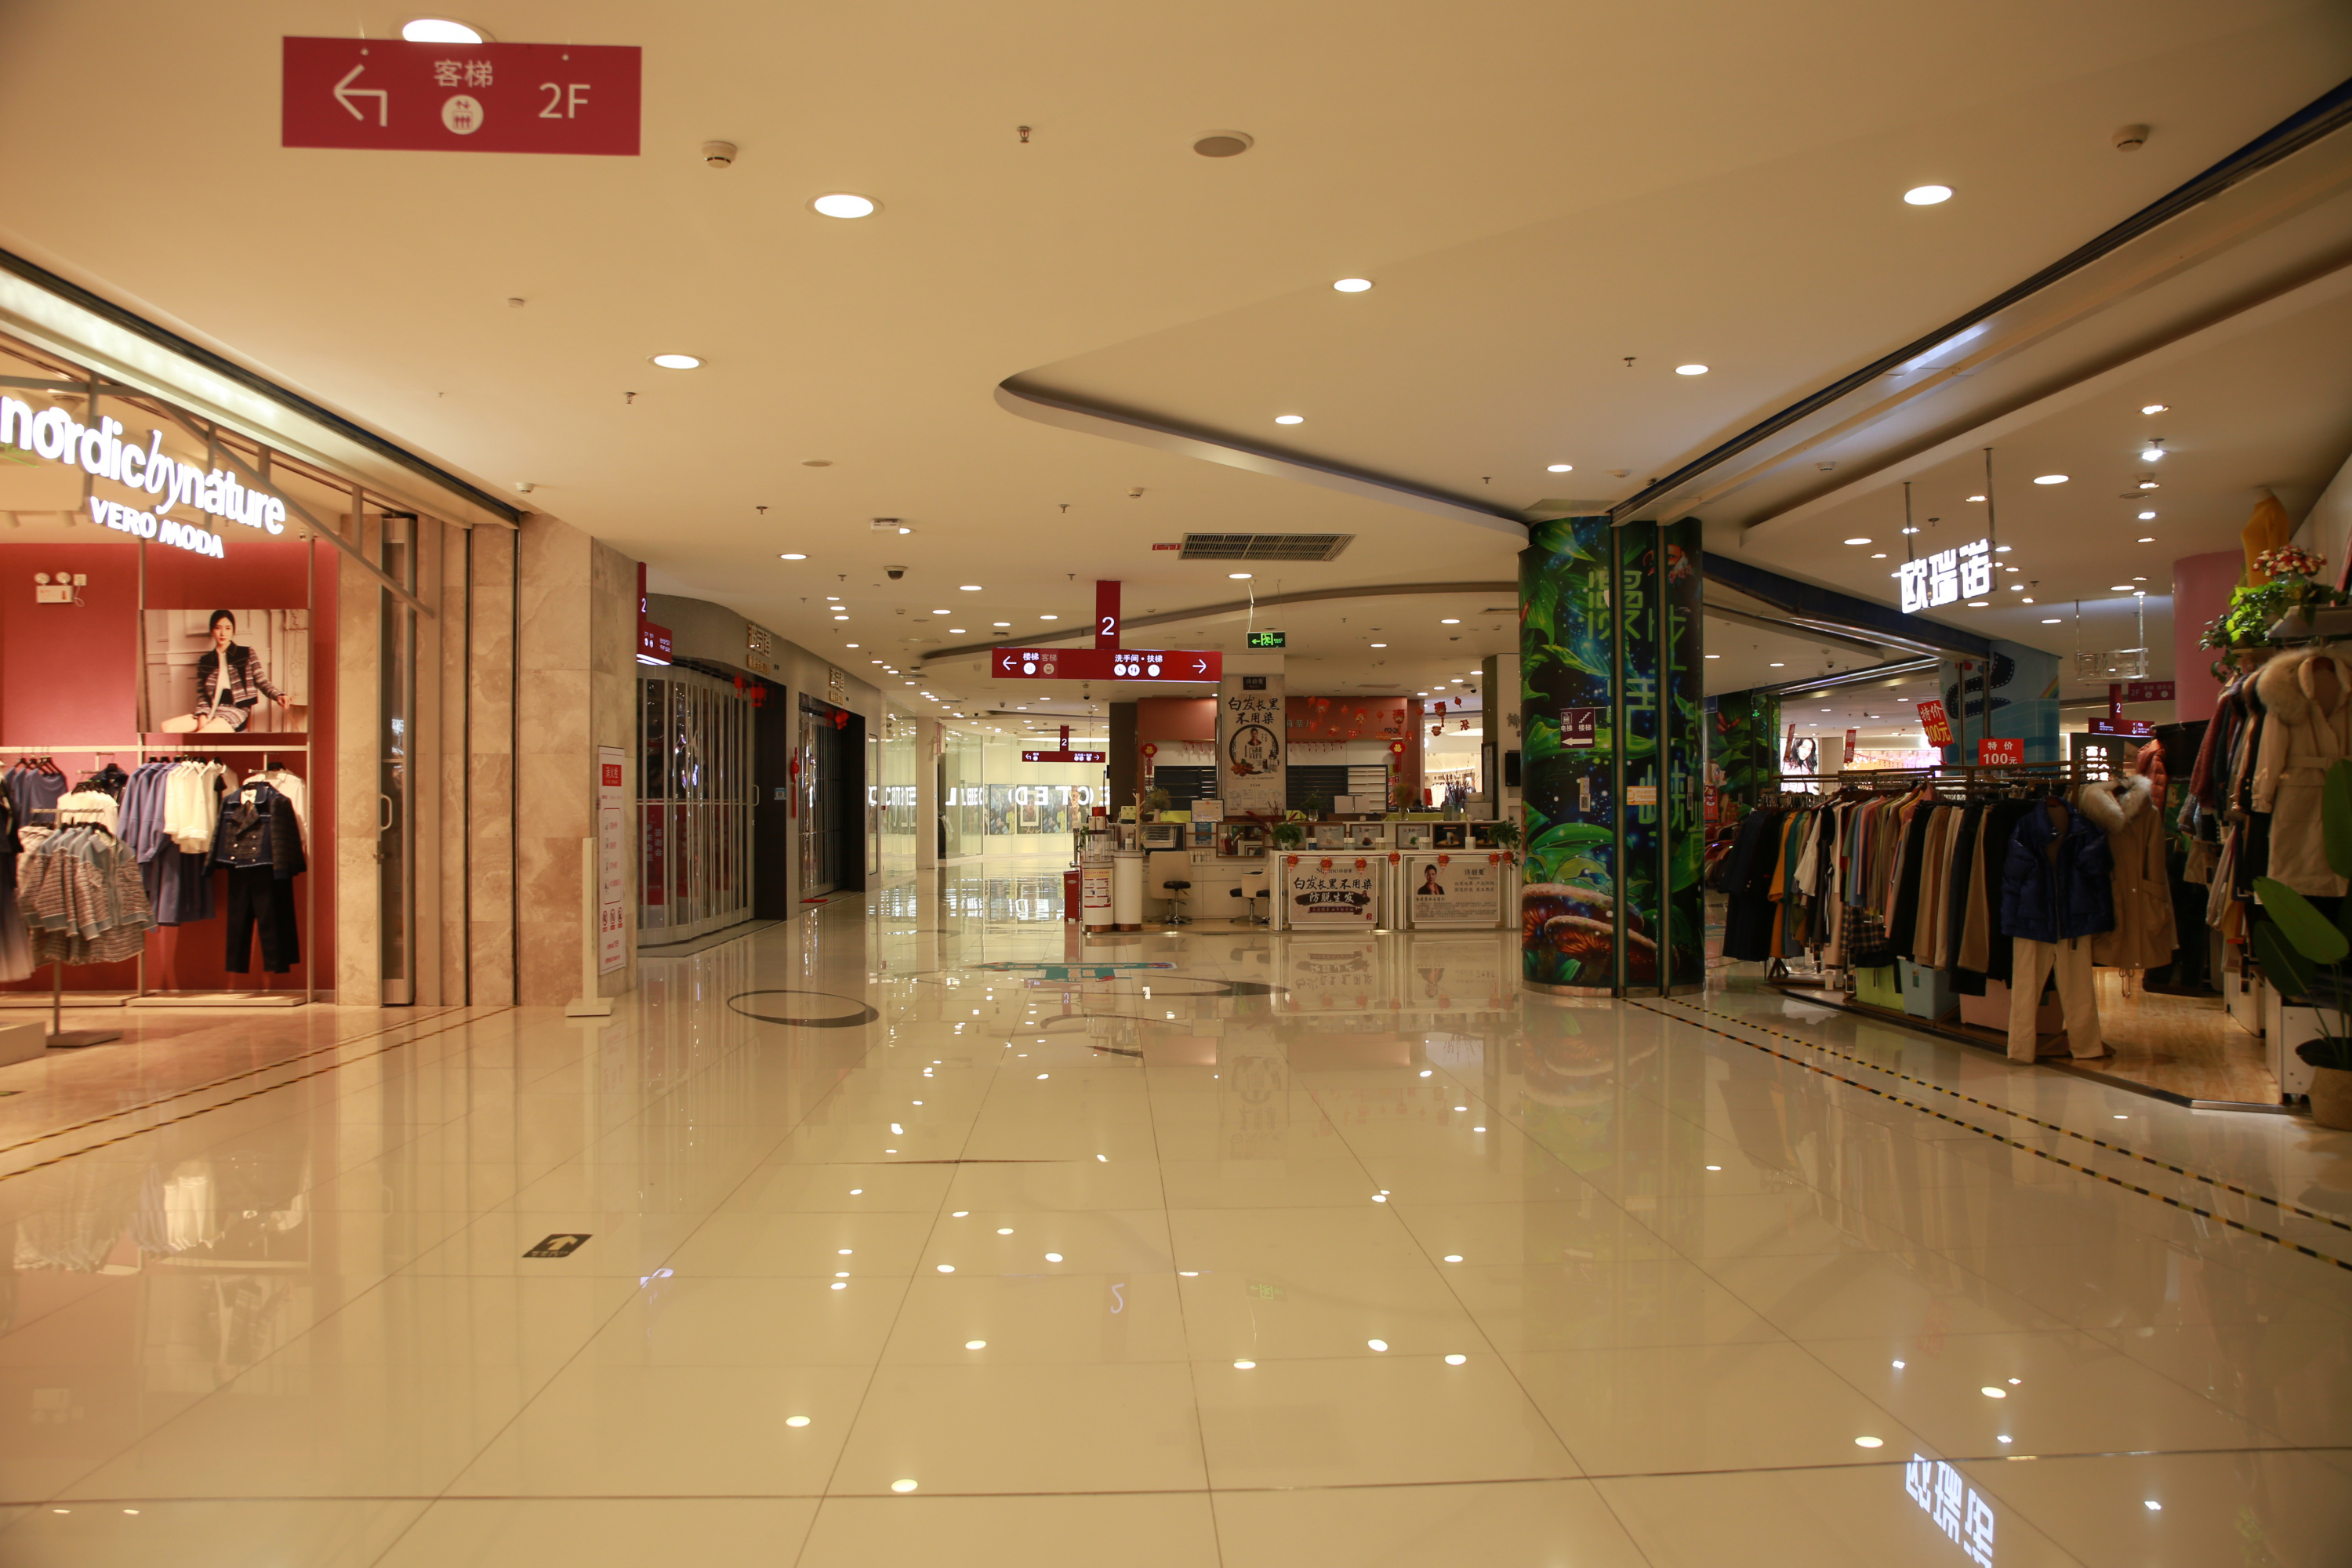 Пустующий торговый центр в Гонконге. Источник: qizai00/shutterstock